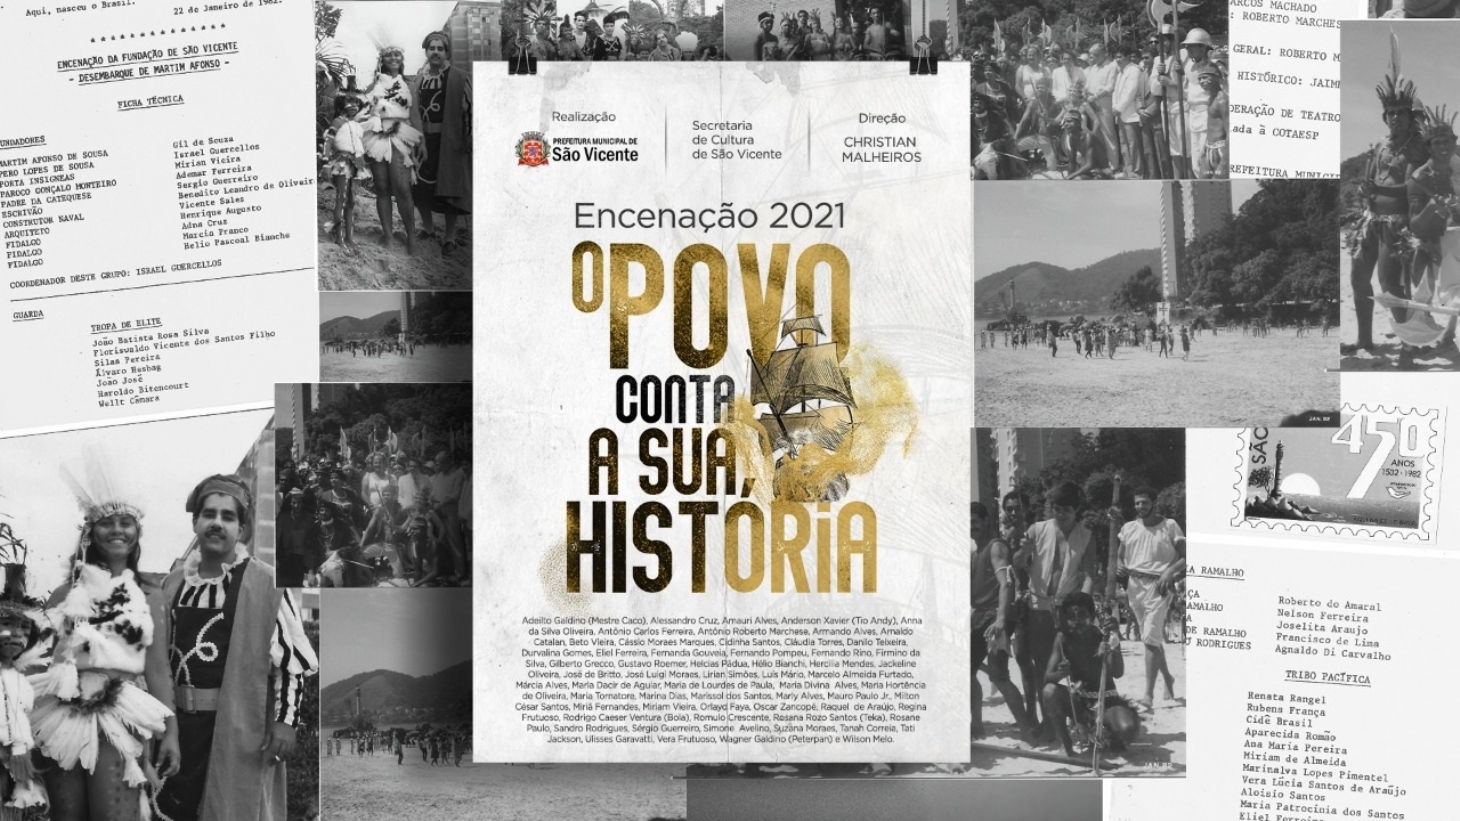 Documentário sobre a Encenação de São Vicente será lançado no Cine Roxy | Jornal da Orla